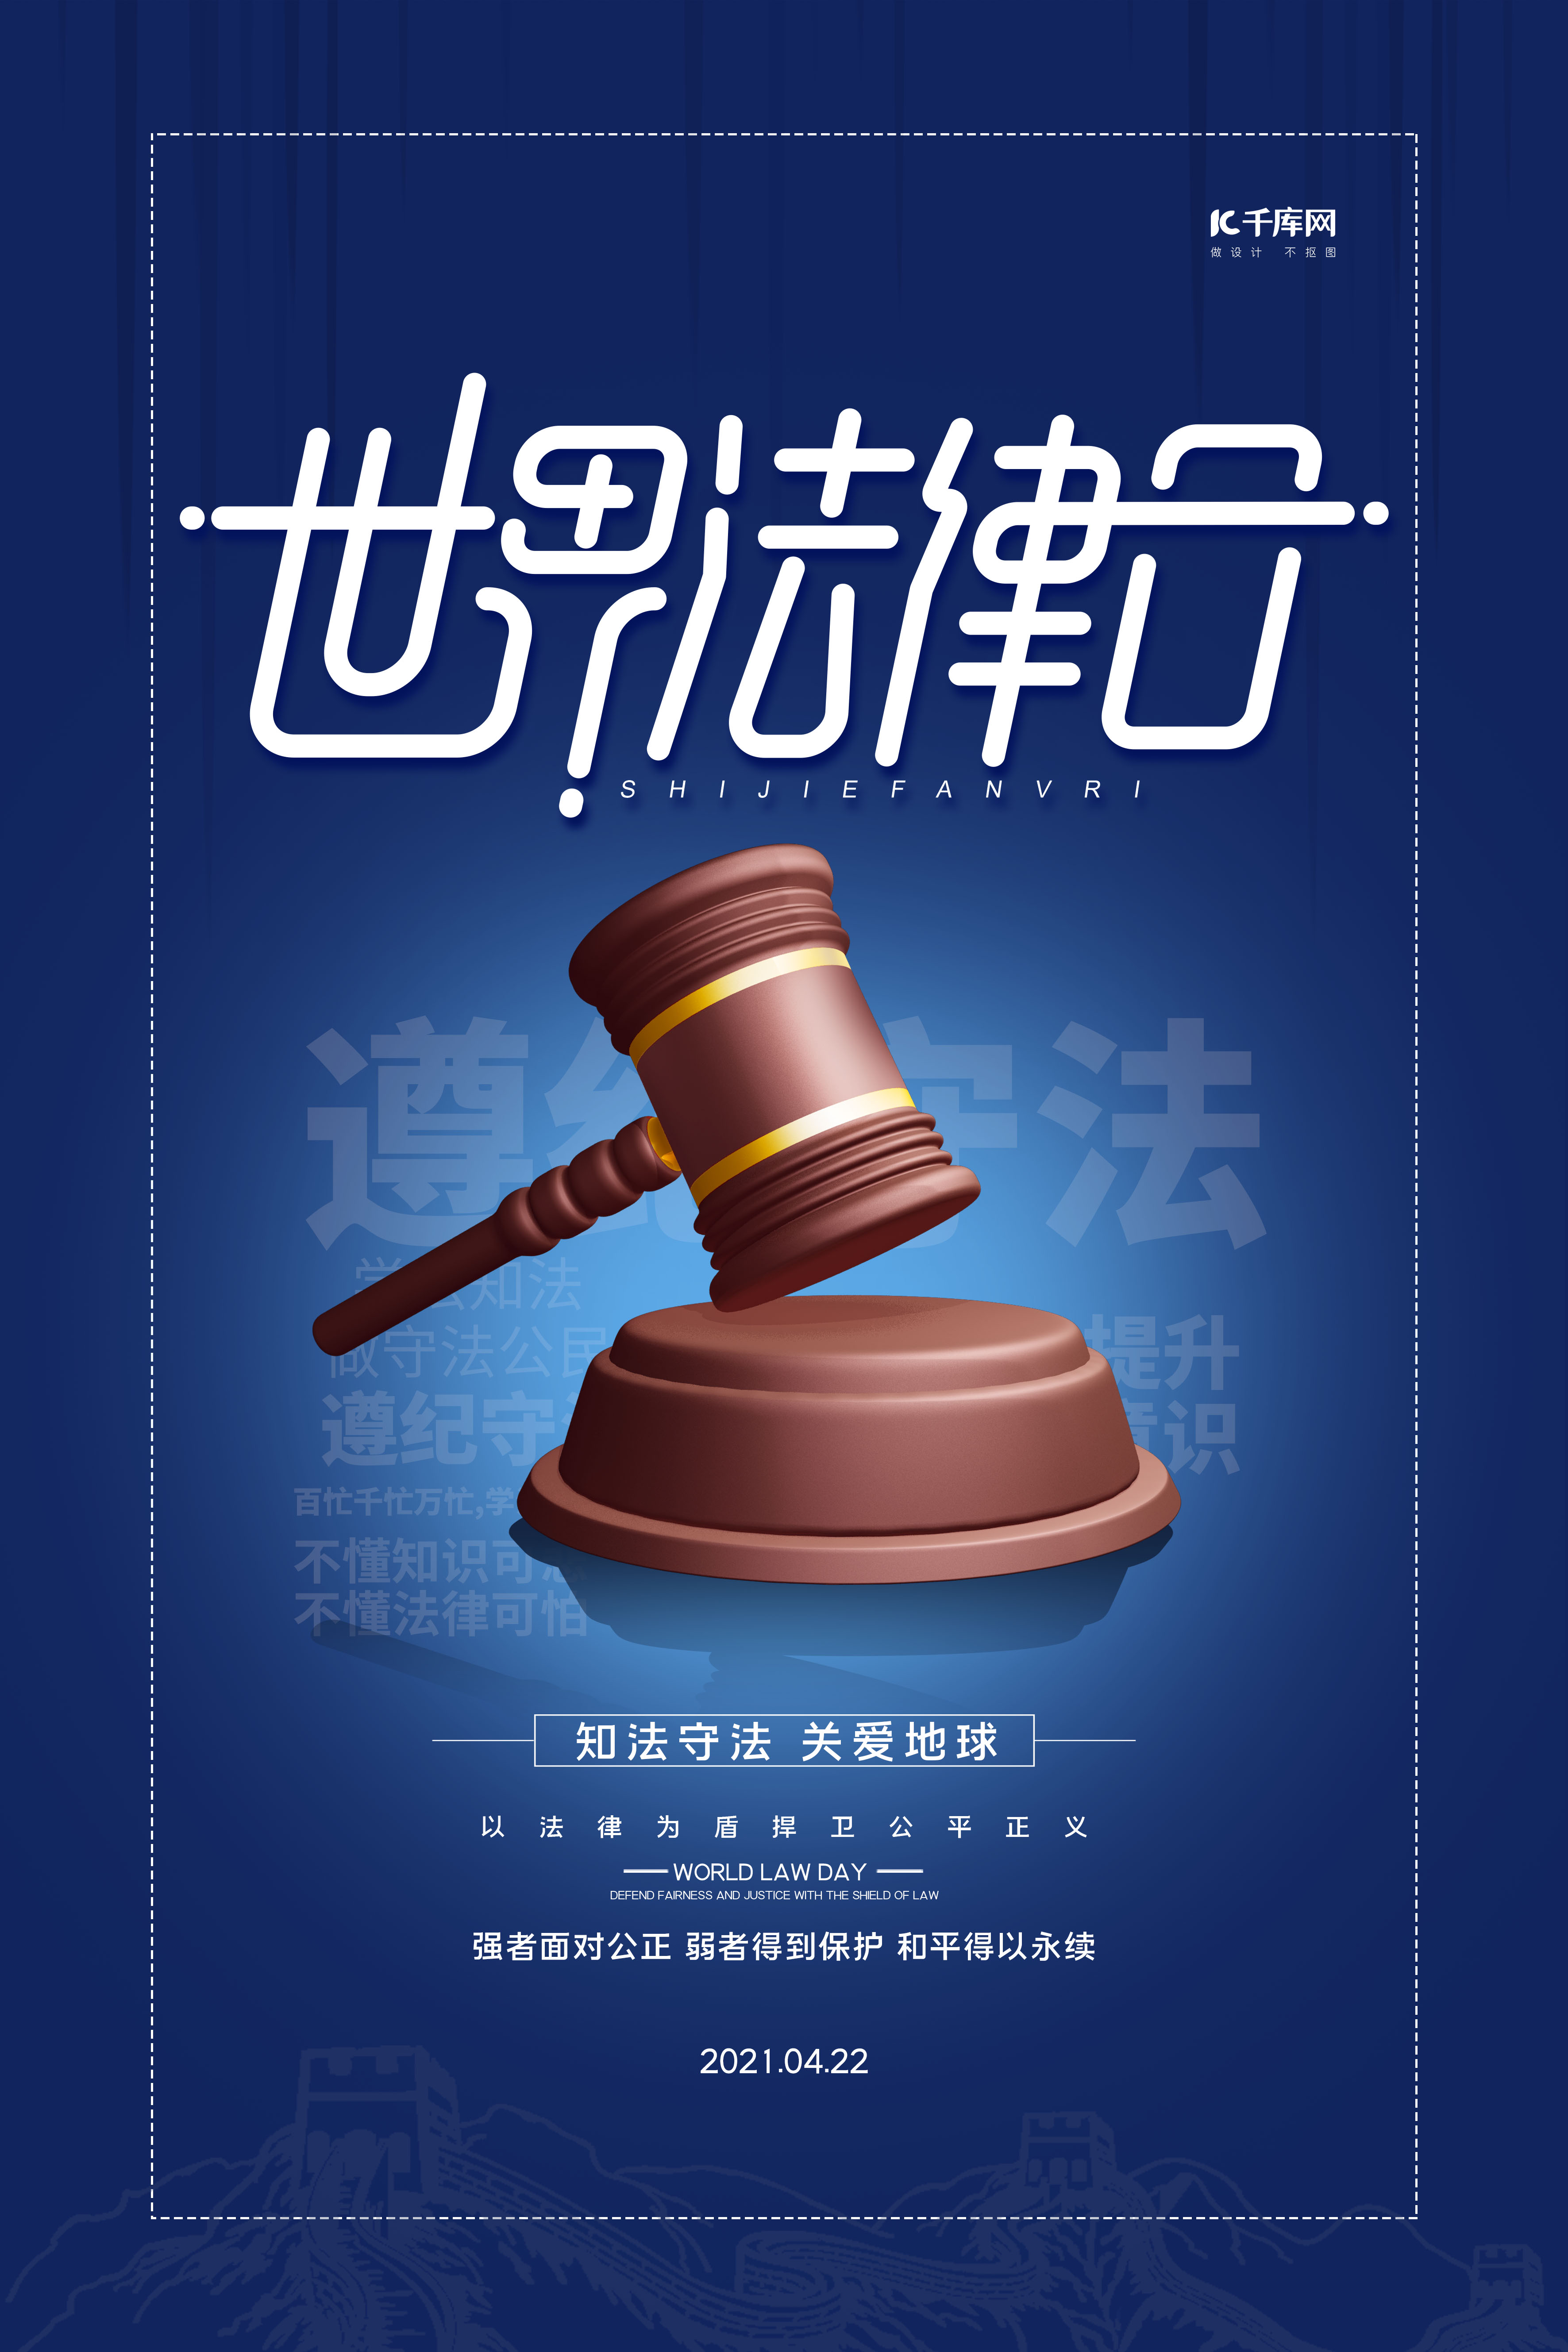 世界法律日蓝色简洁海报图片